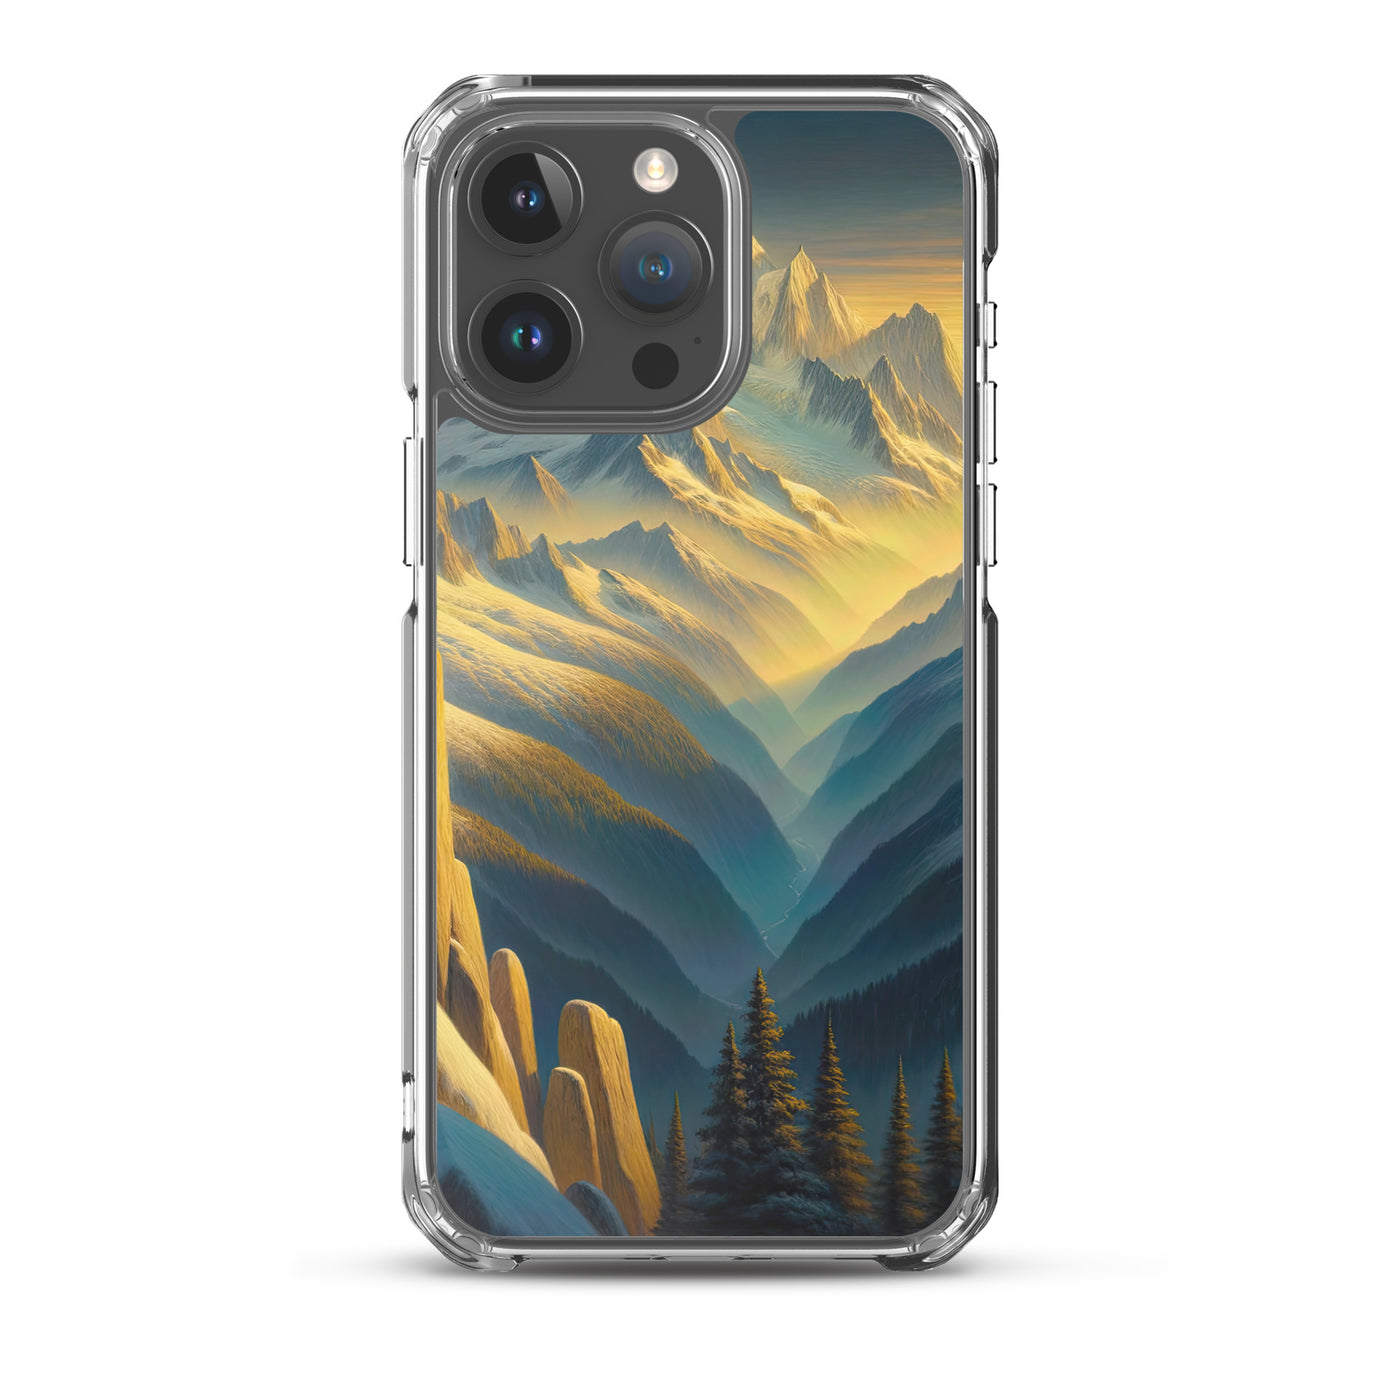 Ölgemälde eines Wanderers bei Morgendämmerung auf Alpengipfeln mit goldenem Sonnenlicht - iPhone Schutzhülle (durchsichtig) wandern xxx yyy zzz iPhone 15 Pro Max